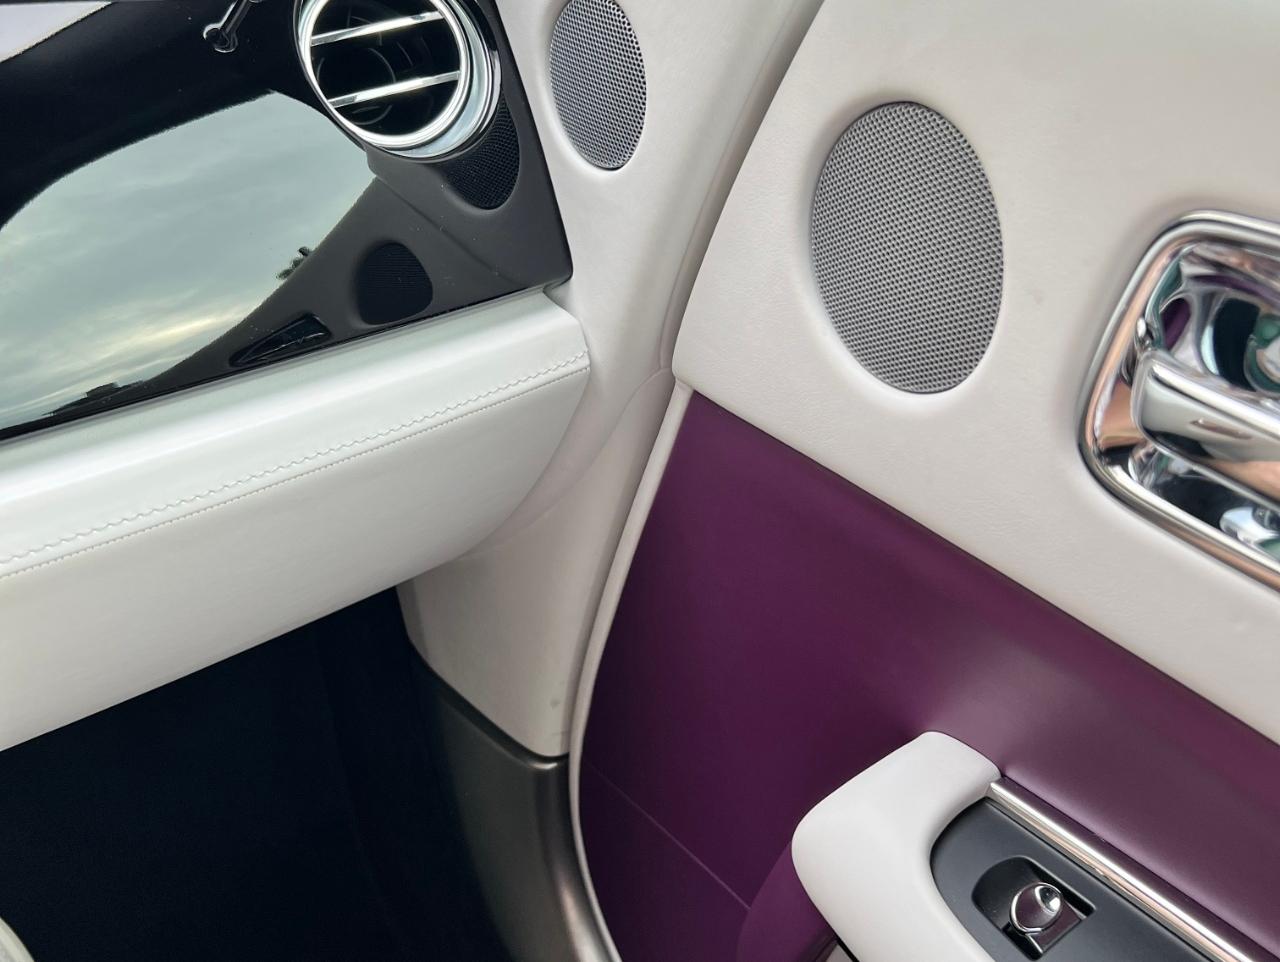 二手劳斯莱斯 魅影 紫色/白色 2018款 6.6T 标准型